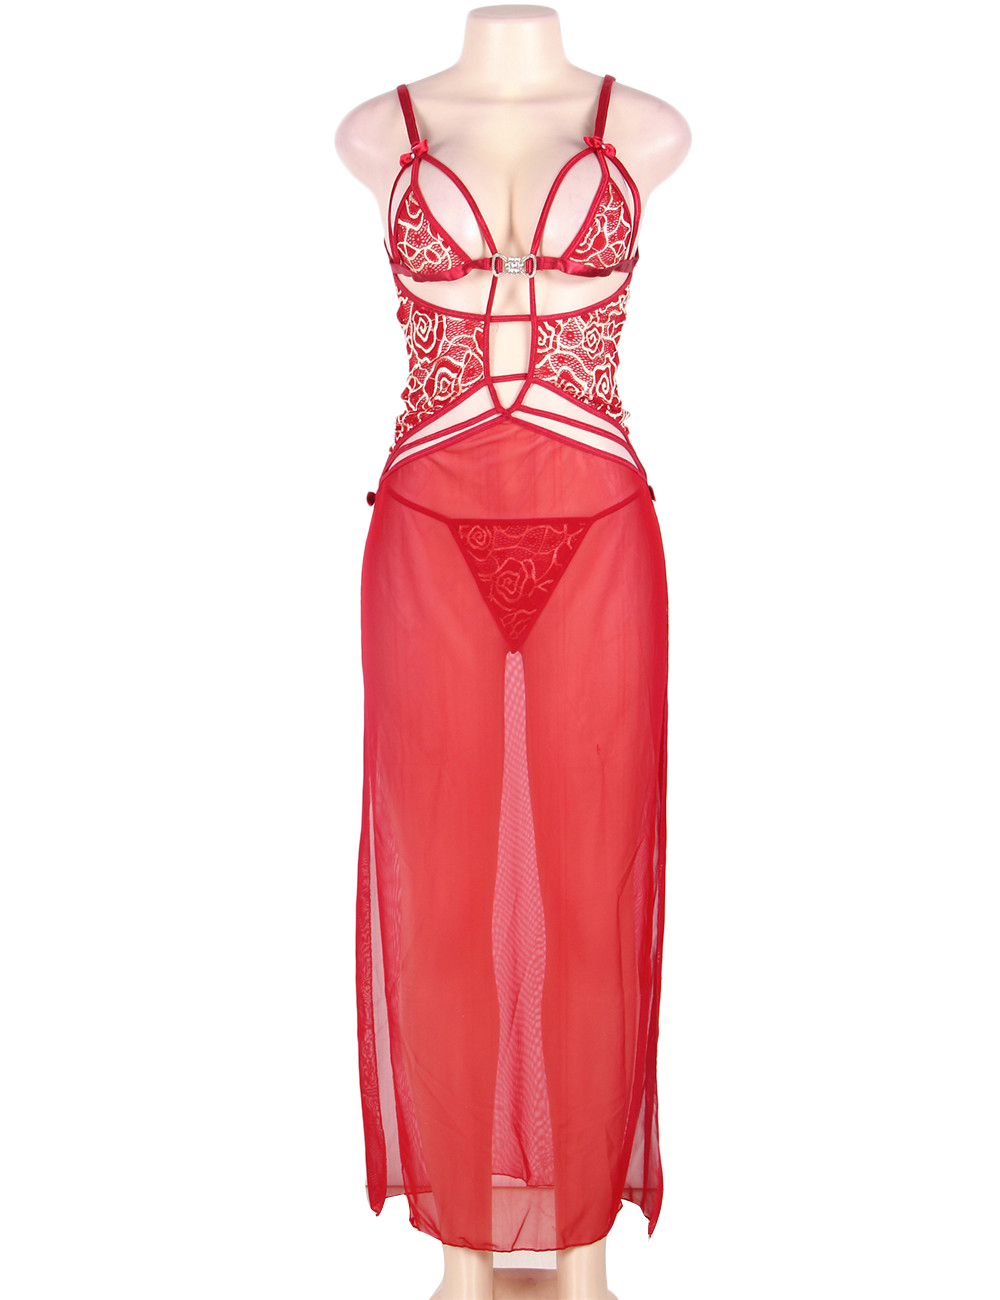 Transparent Romantic Nightwear:2pcs Belle Decolette (Plus Size)